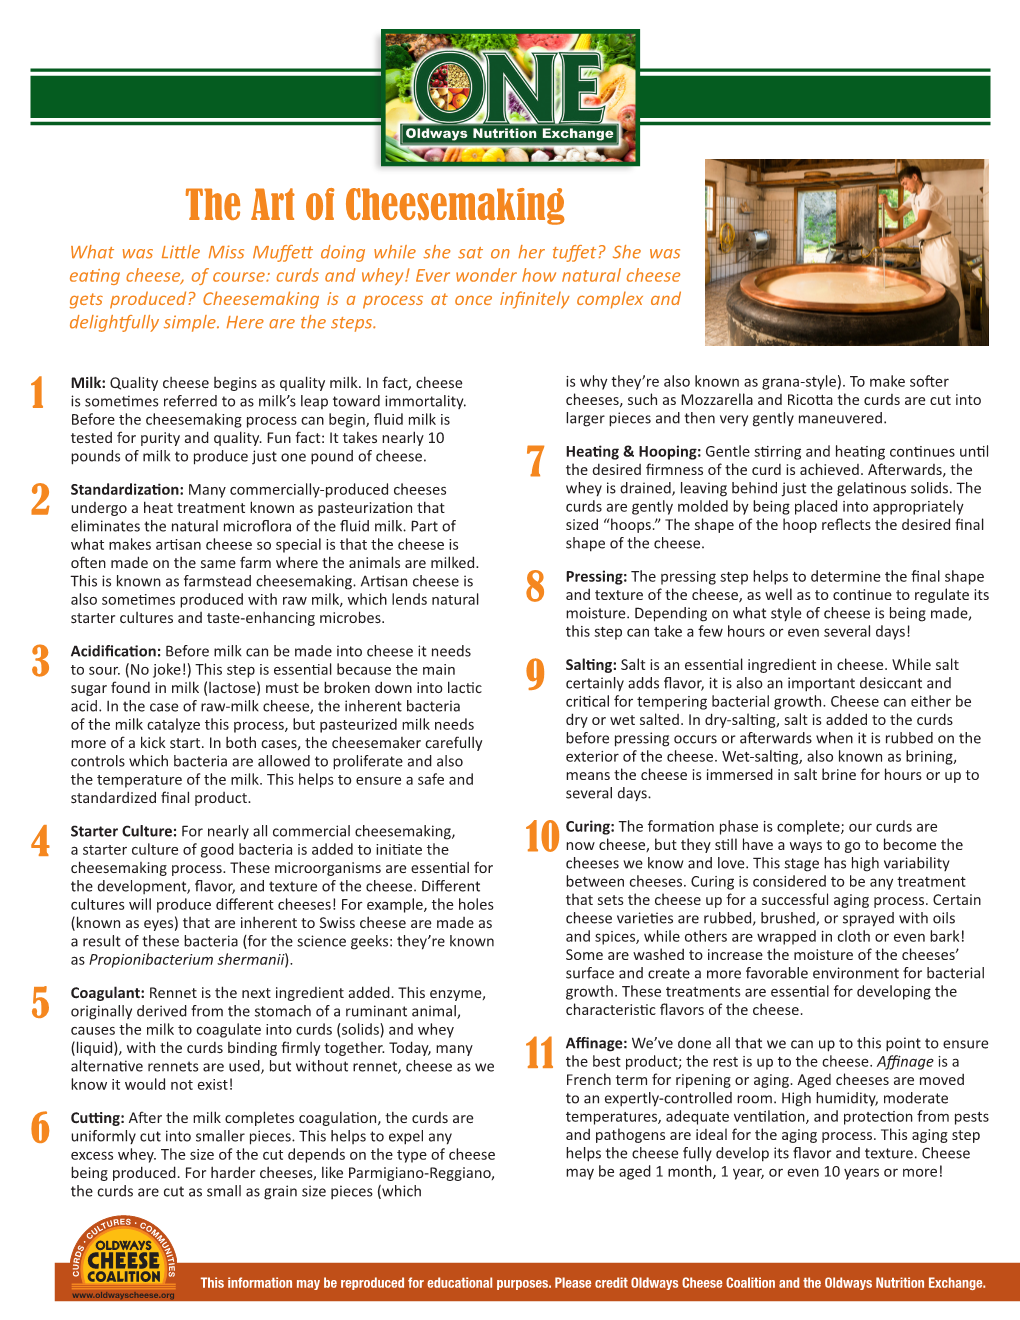 The Art of Cheesemaking